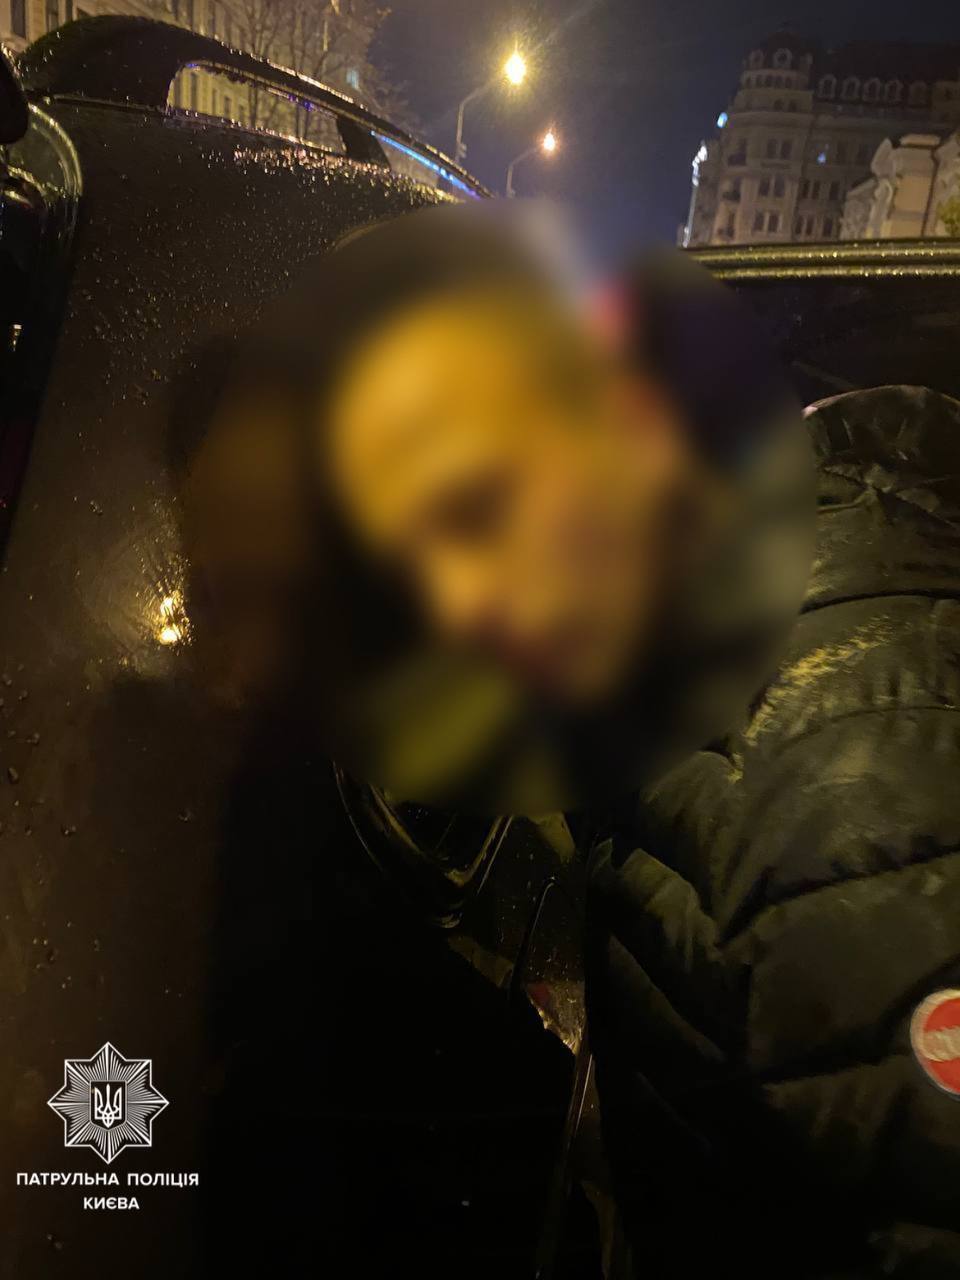 У Києві на Хрещатику чоловік під час конфлікту ледь не вбив опонента. Фото і подробиці